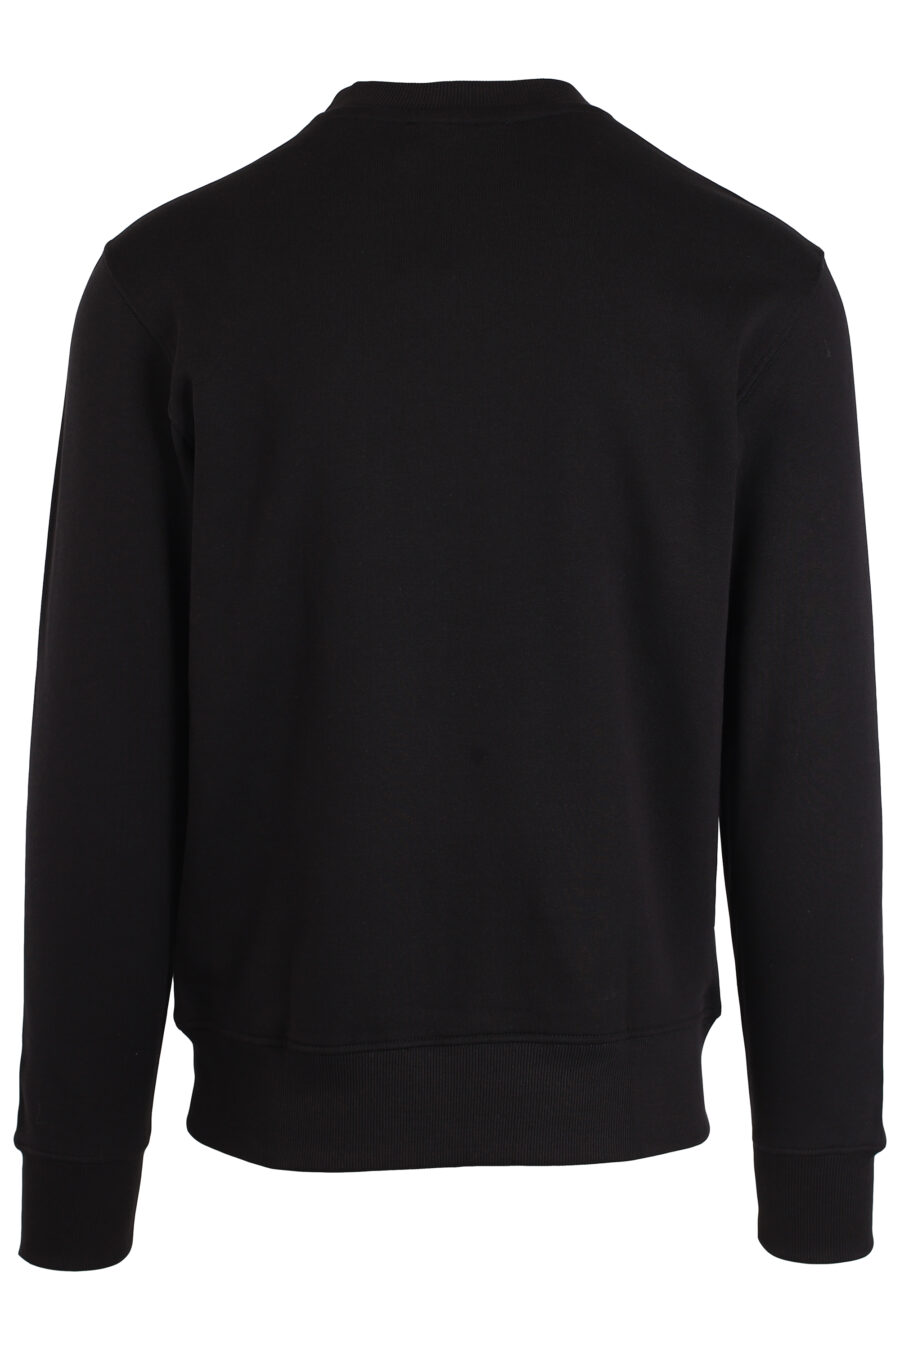 Schwarzes Sweatshirt mit kleinem runden goldenen Logo - IMG 3991